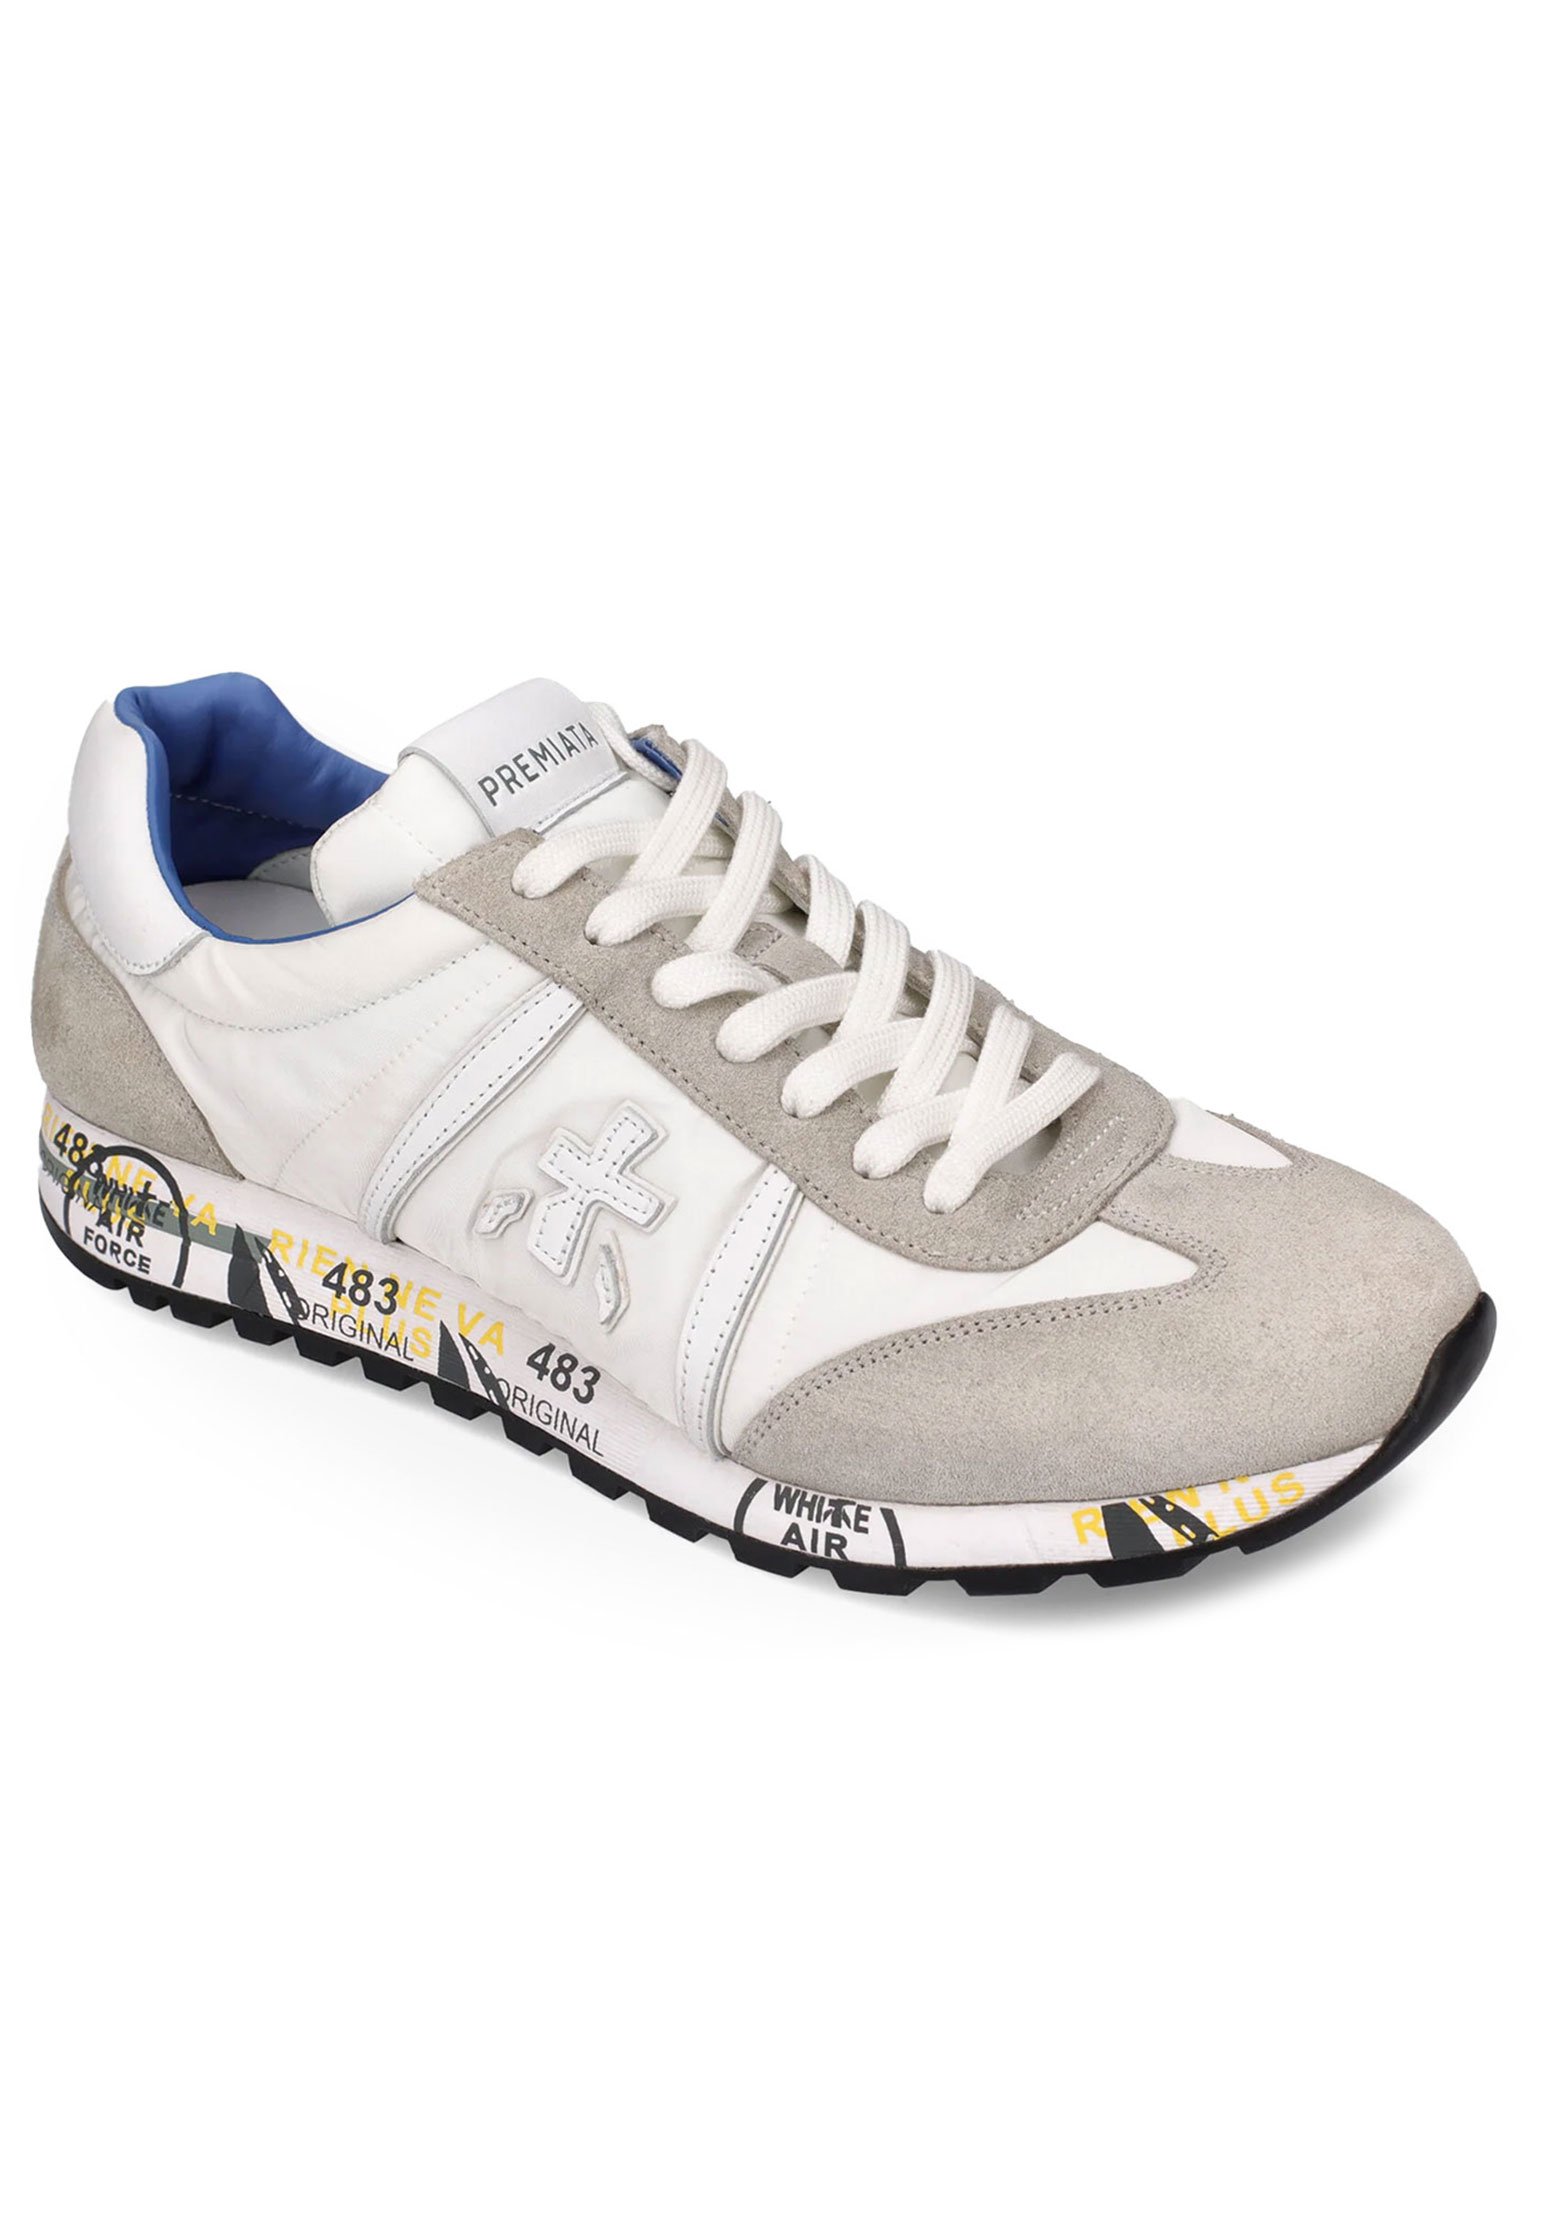 Sneakers PREMIATA Color: white (Code: 4175) in online store Allure